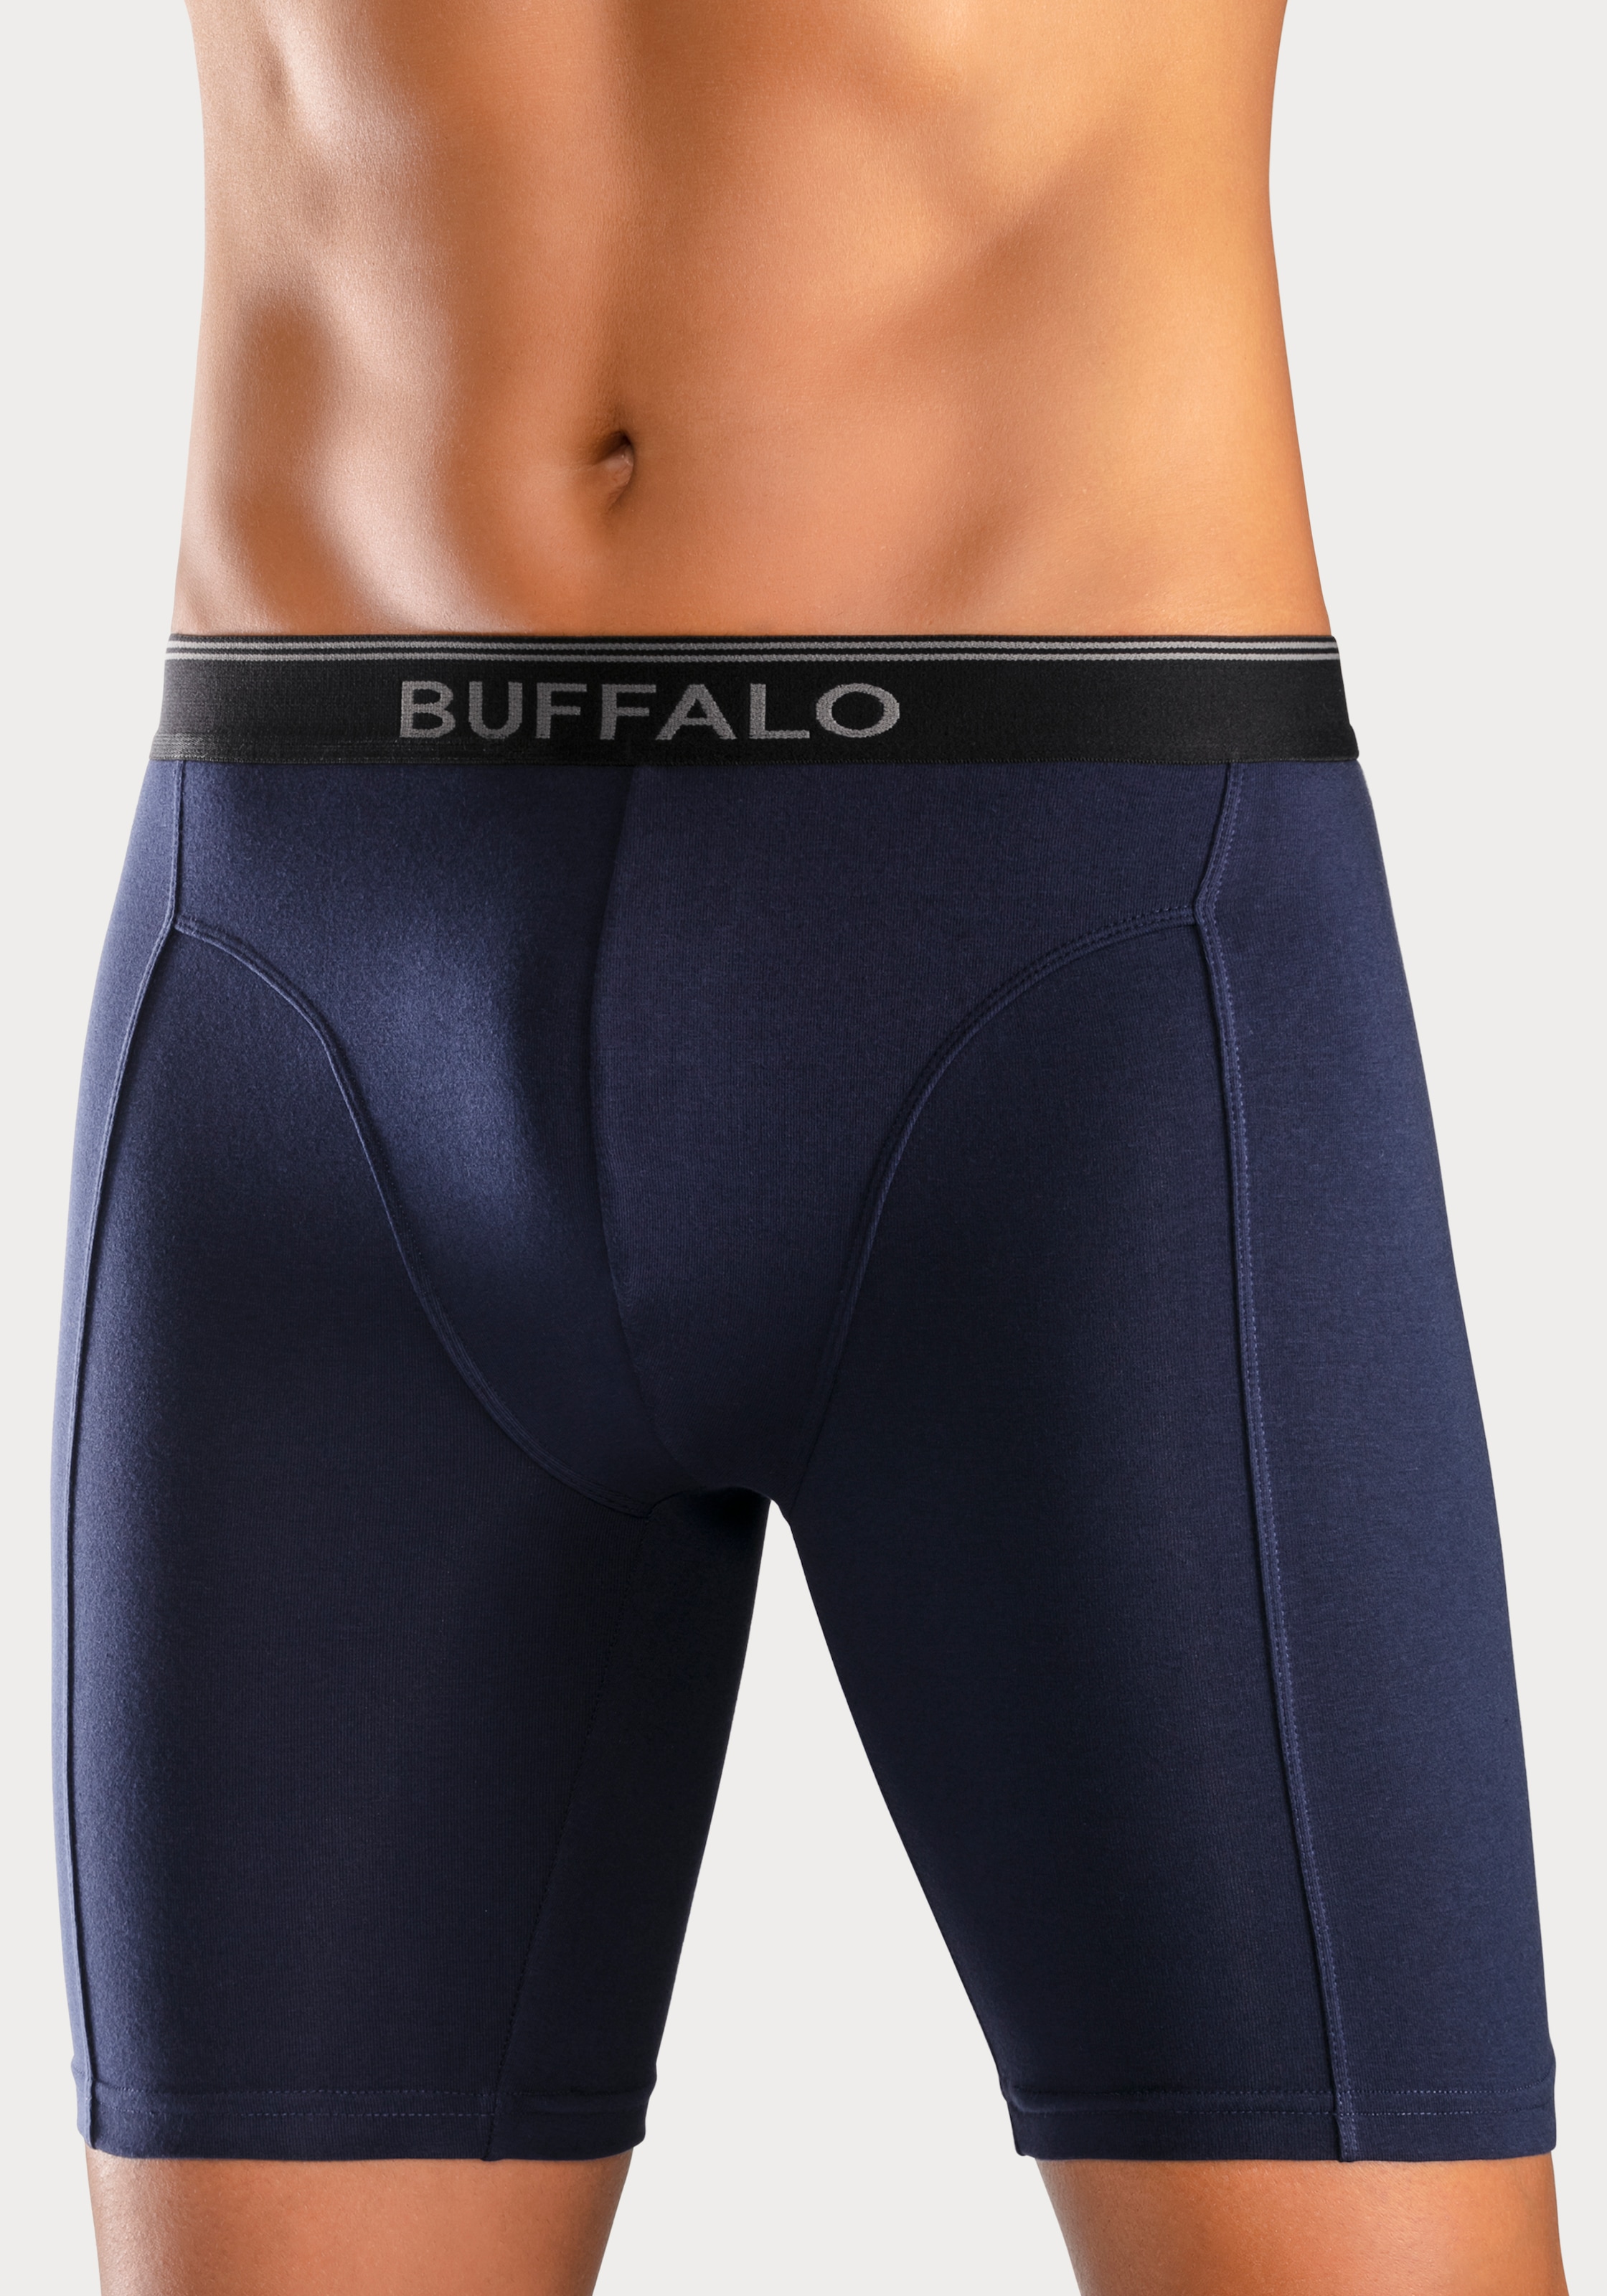 Buffalo Boxer, (Packung, 3 St.), in langer Form ideal auch für Sport und Trekking